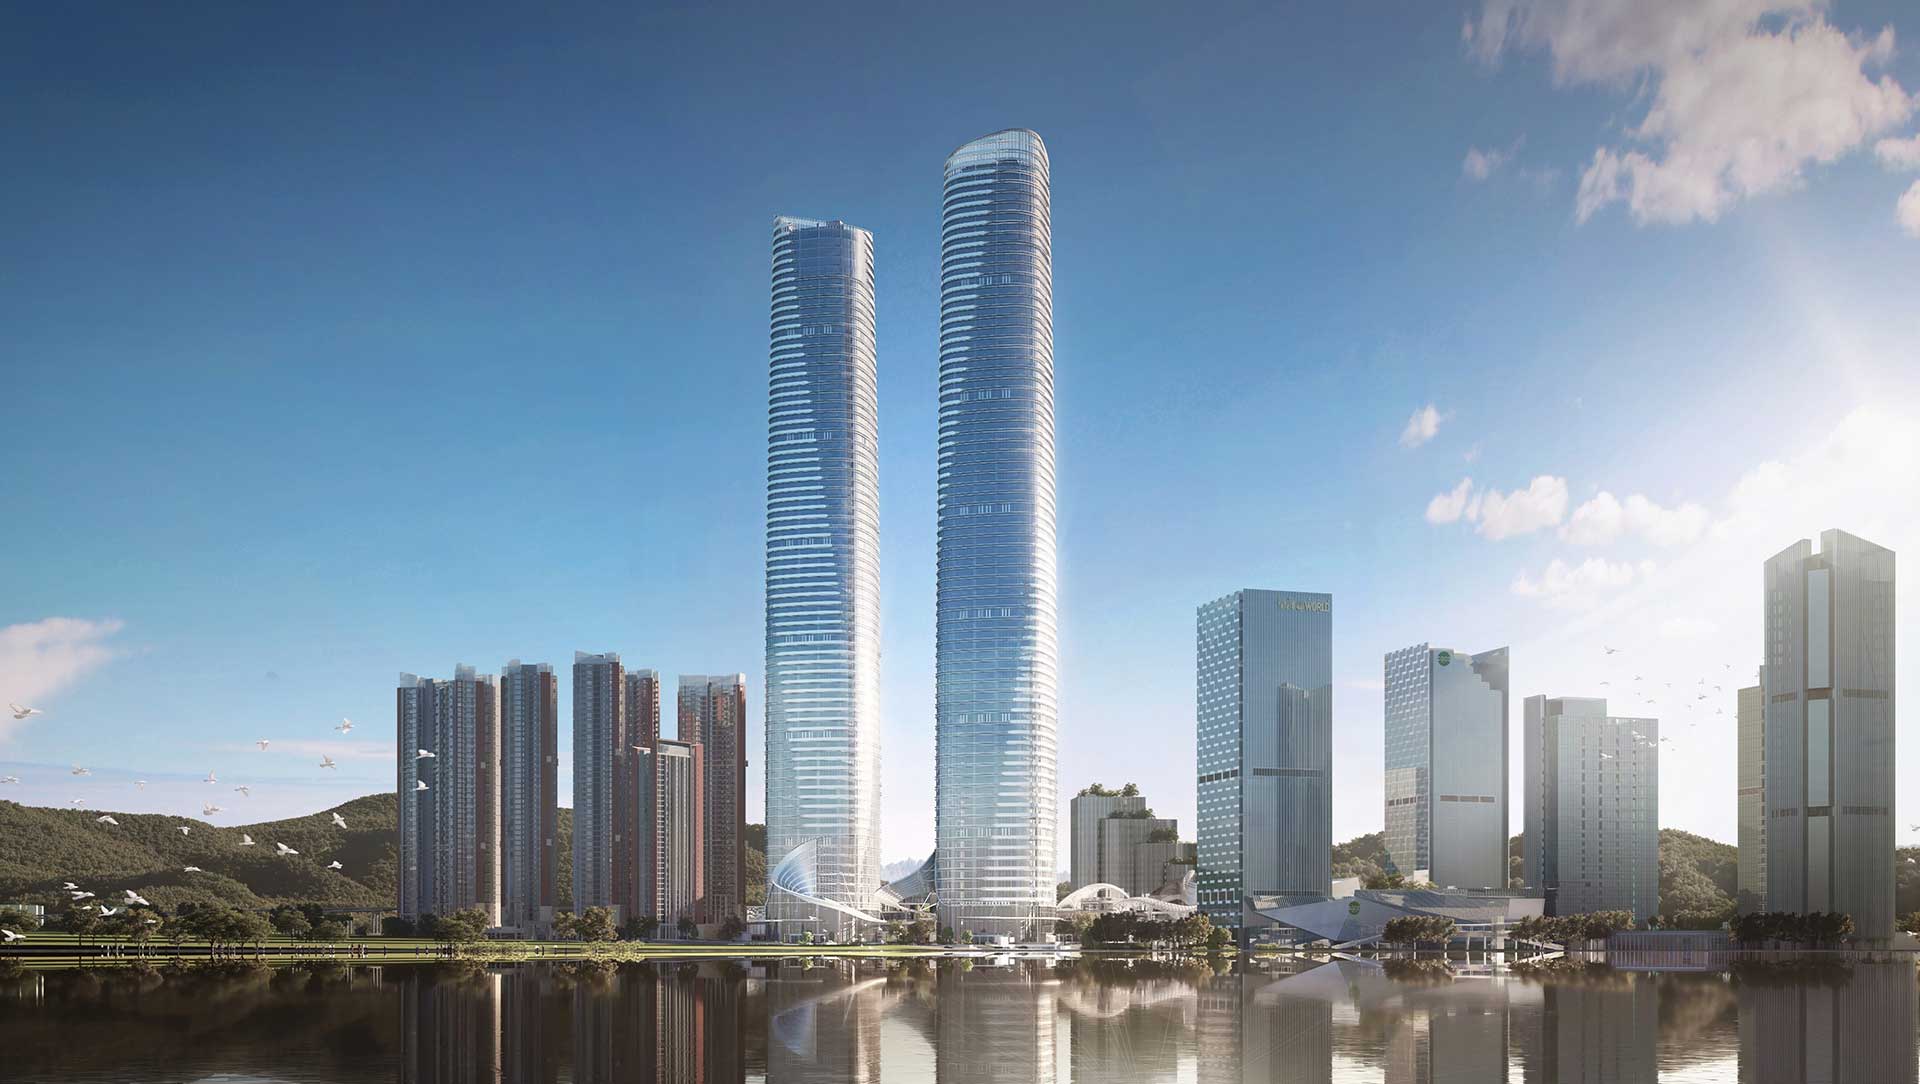 深センタワー (深圳塔,Shenzhen Tower,H700Shenzhen Tower) - 中国の超高層ビル・都市開発計画